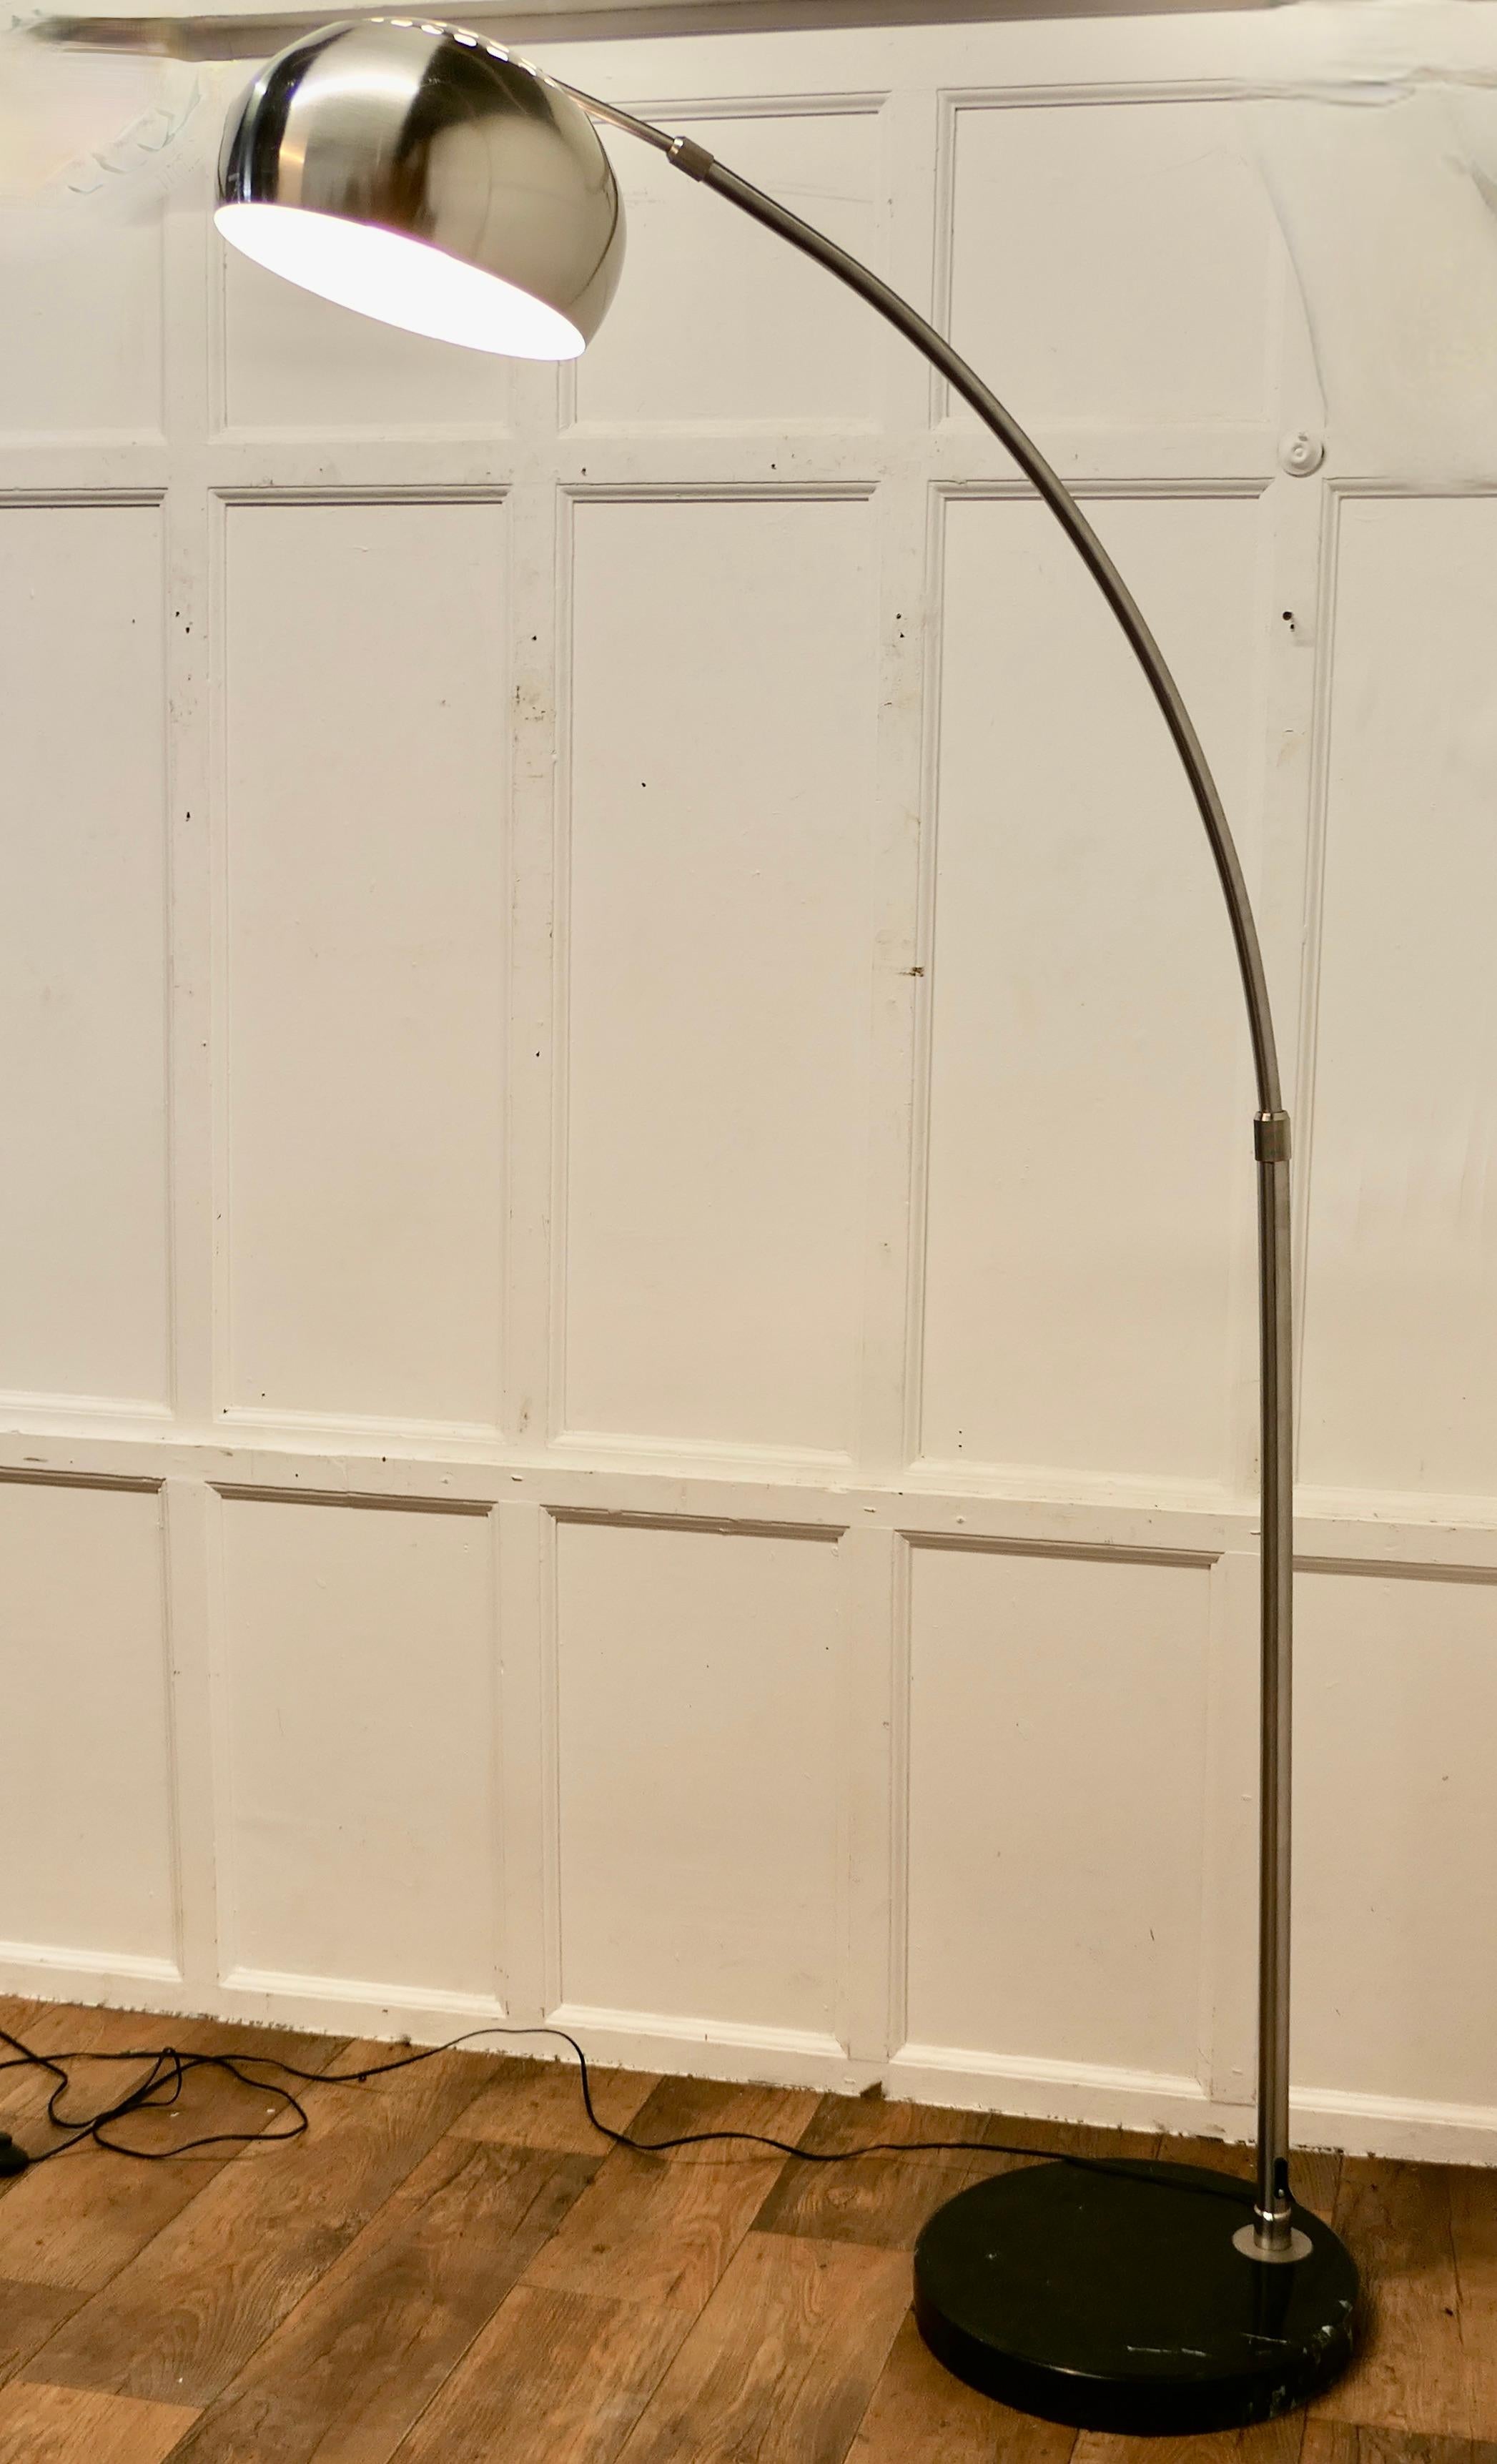 Lampadaire italien à arc chromé sur base en marbre

Lampe sur pied italienne au design rétro des années 1960 
La lampe à arc est en chrome de la meilleure qualité et repose sur un socle en marbre noir très lourd. 
Grande et imposante pièce, elle